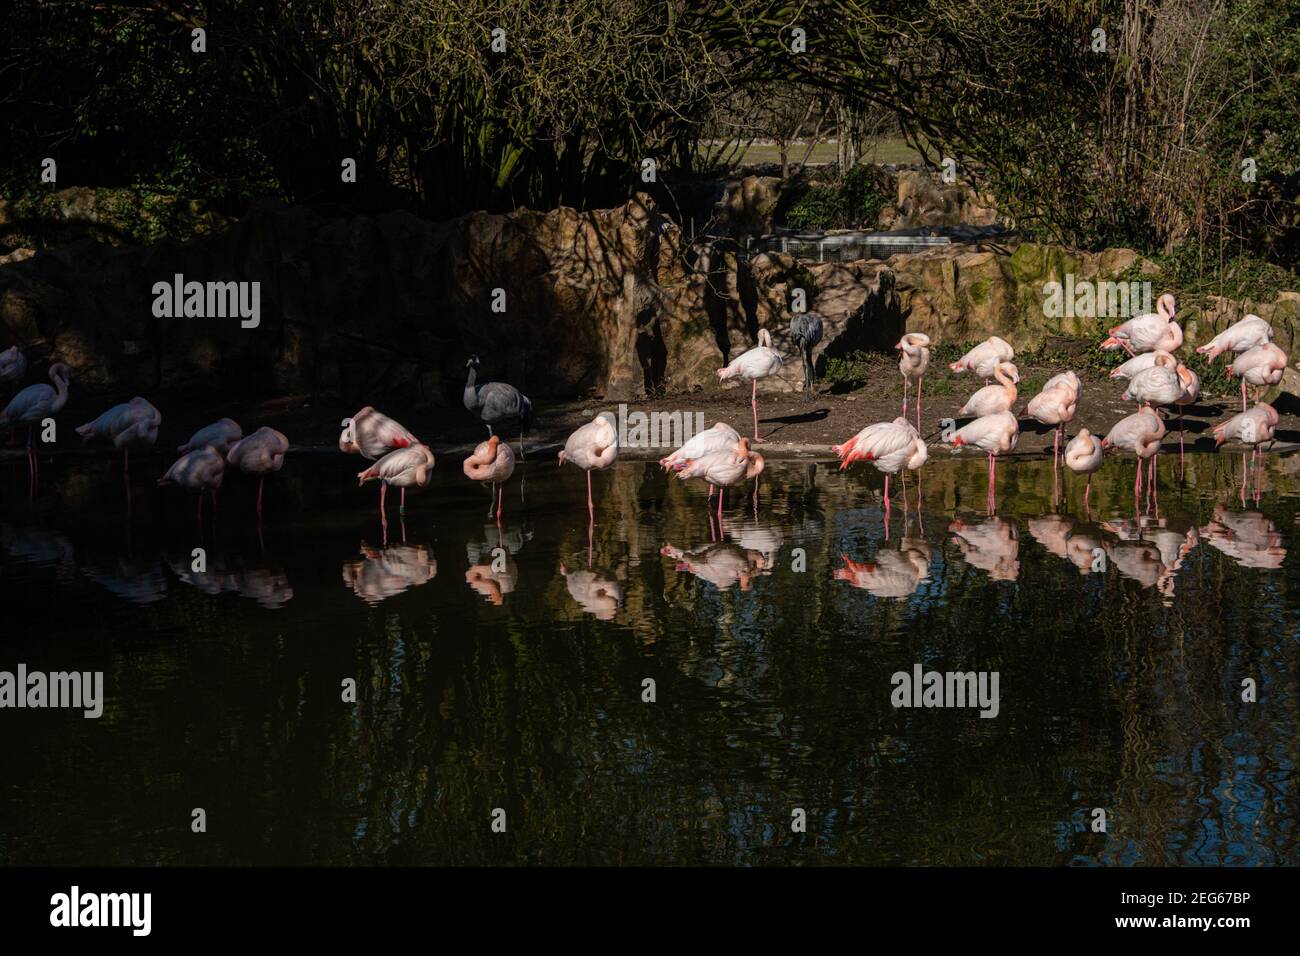 Lyon (Frankreich), 27. Februar 2021. Rosa Flamingos auf einem Bein mit ihren Reflexen im Wasser im Park des goldenen Kopfes. Stockfoto